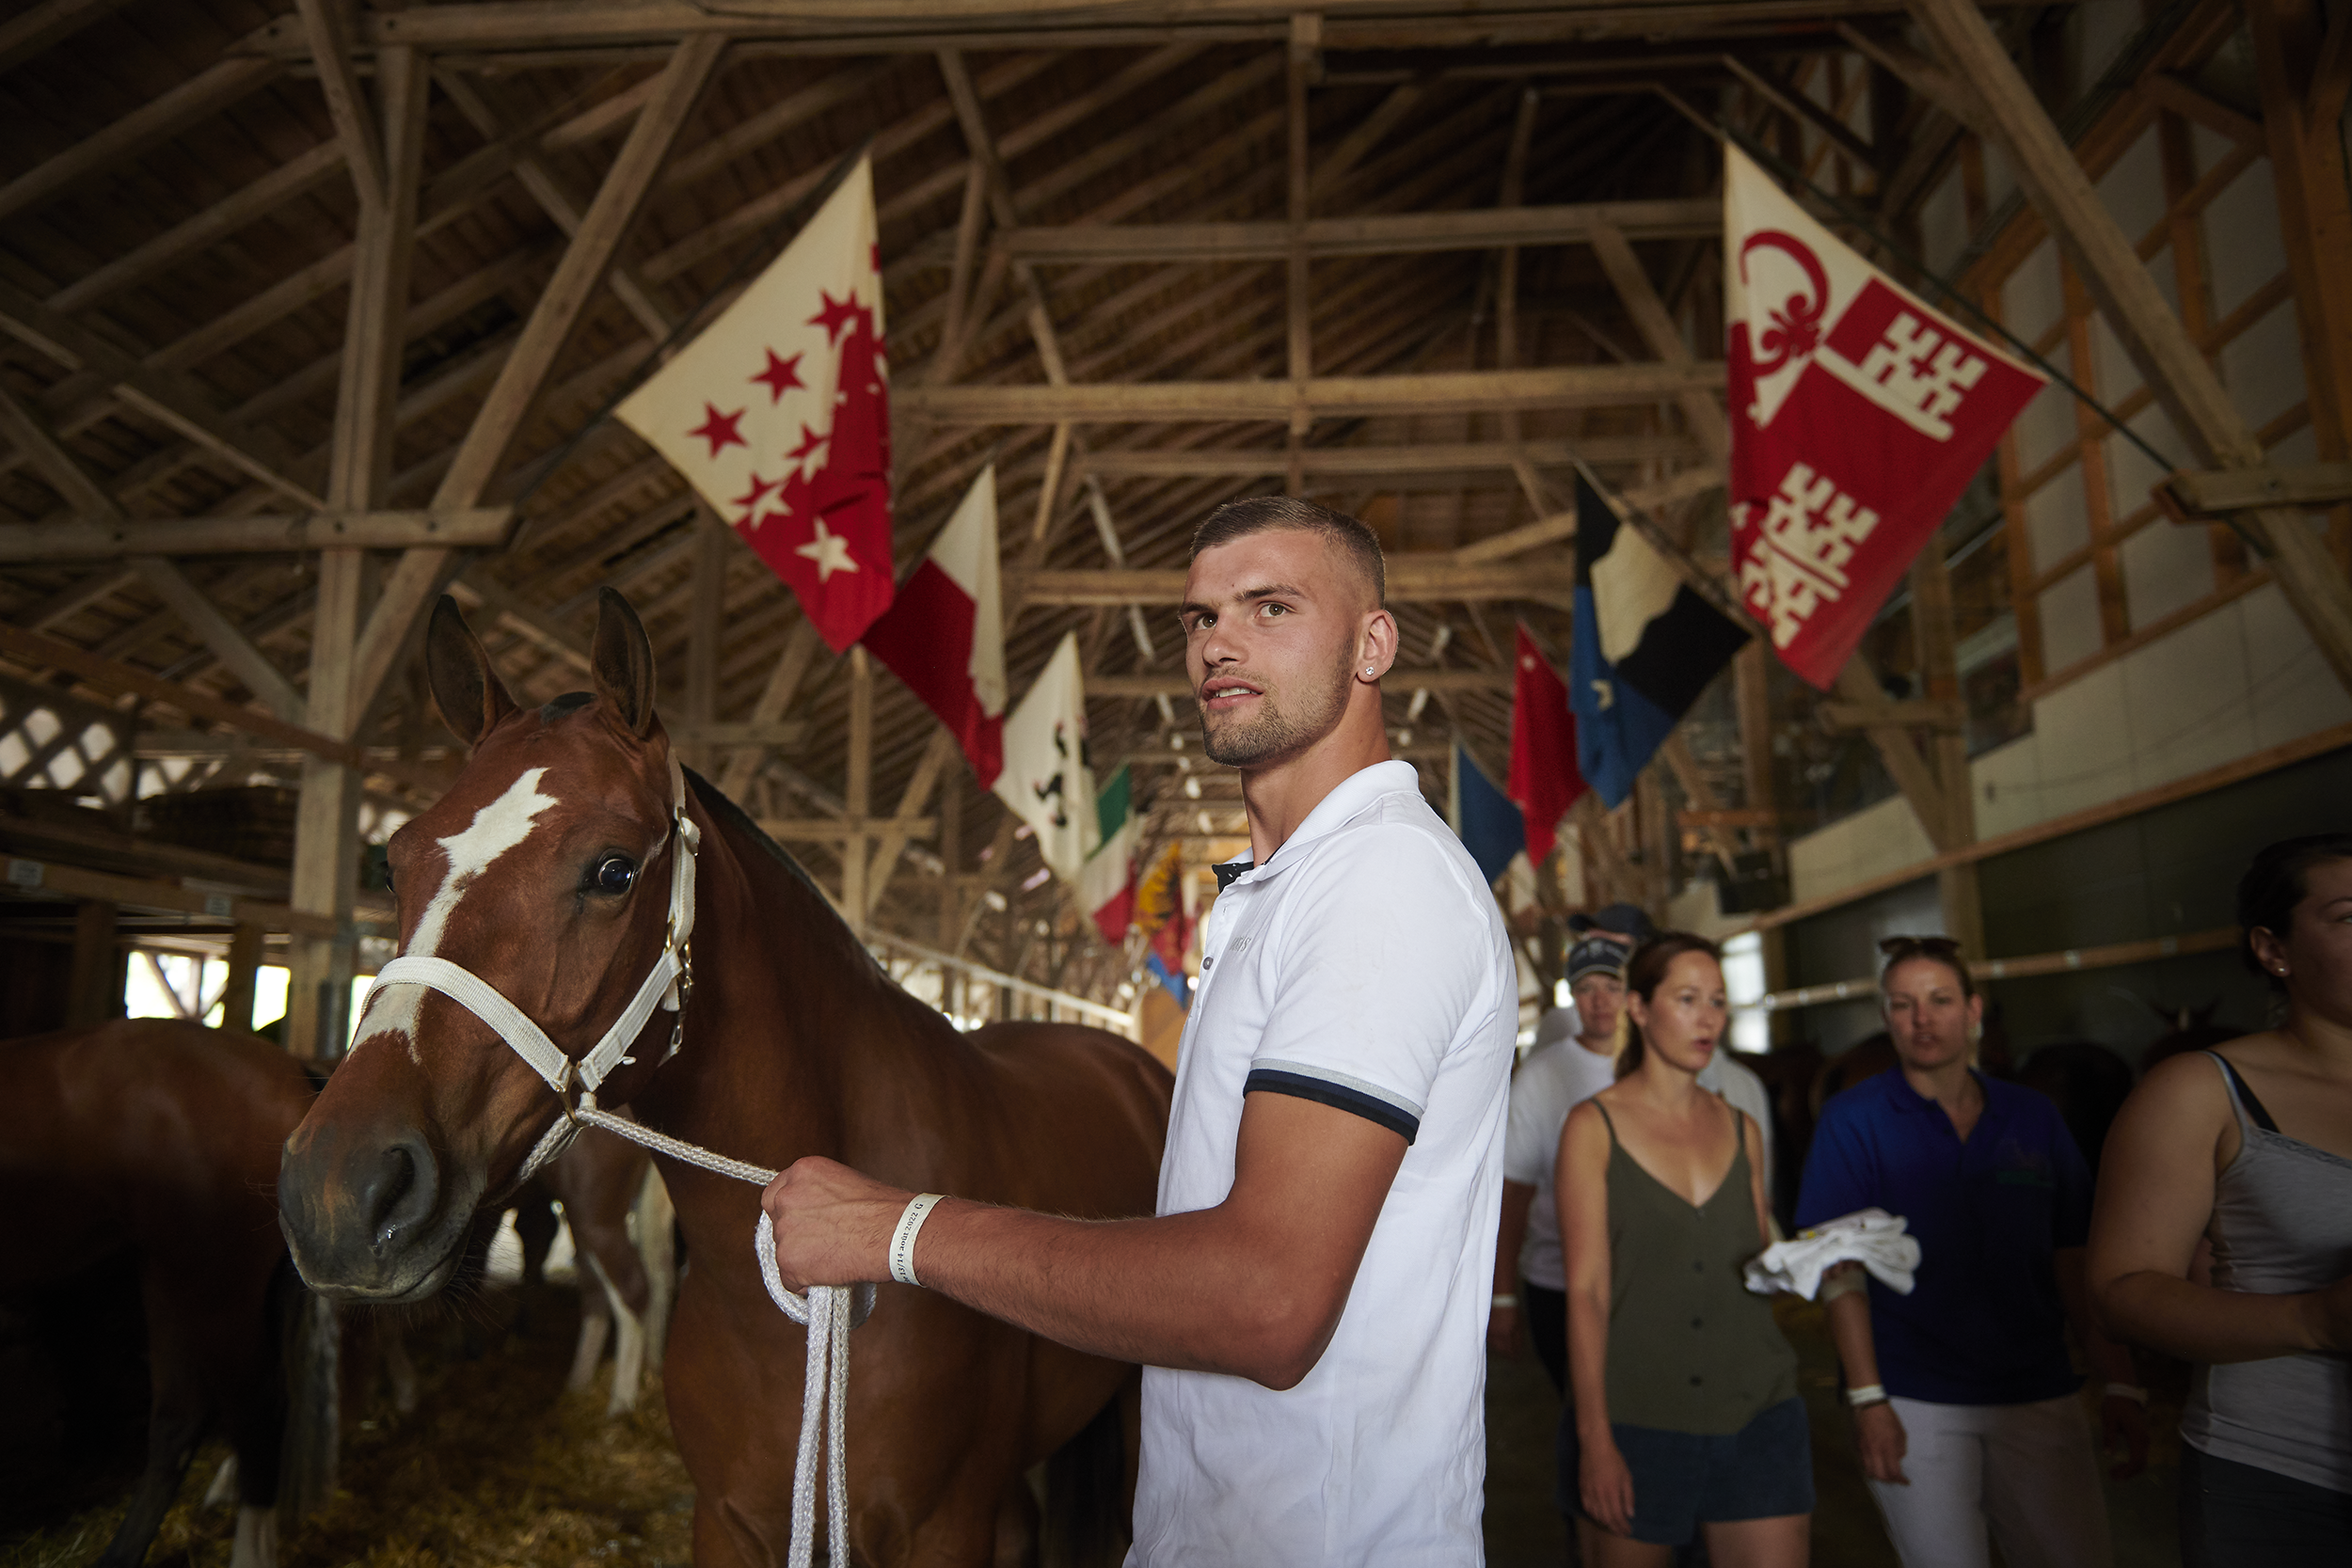 Marché-Concours national de chevaux, Saigelégier 